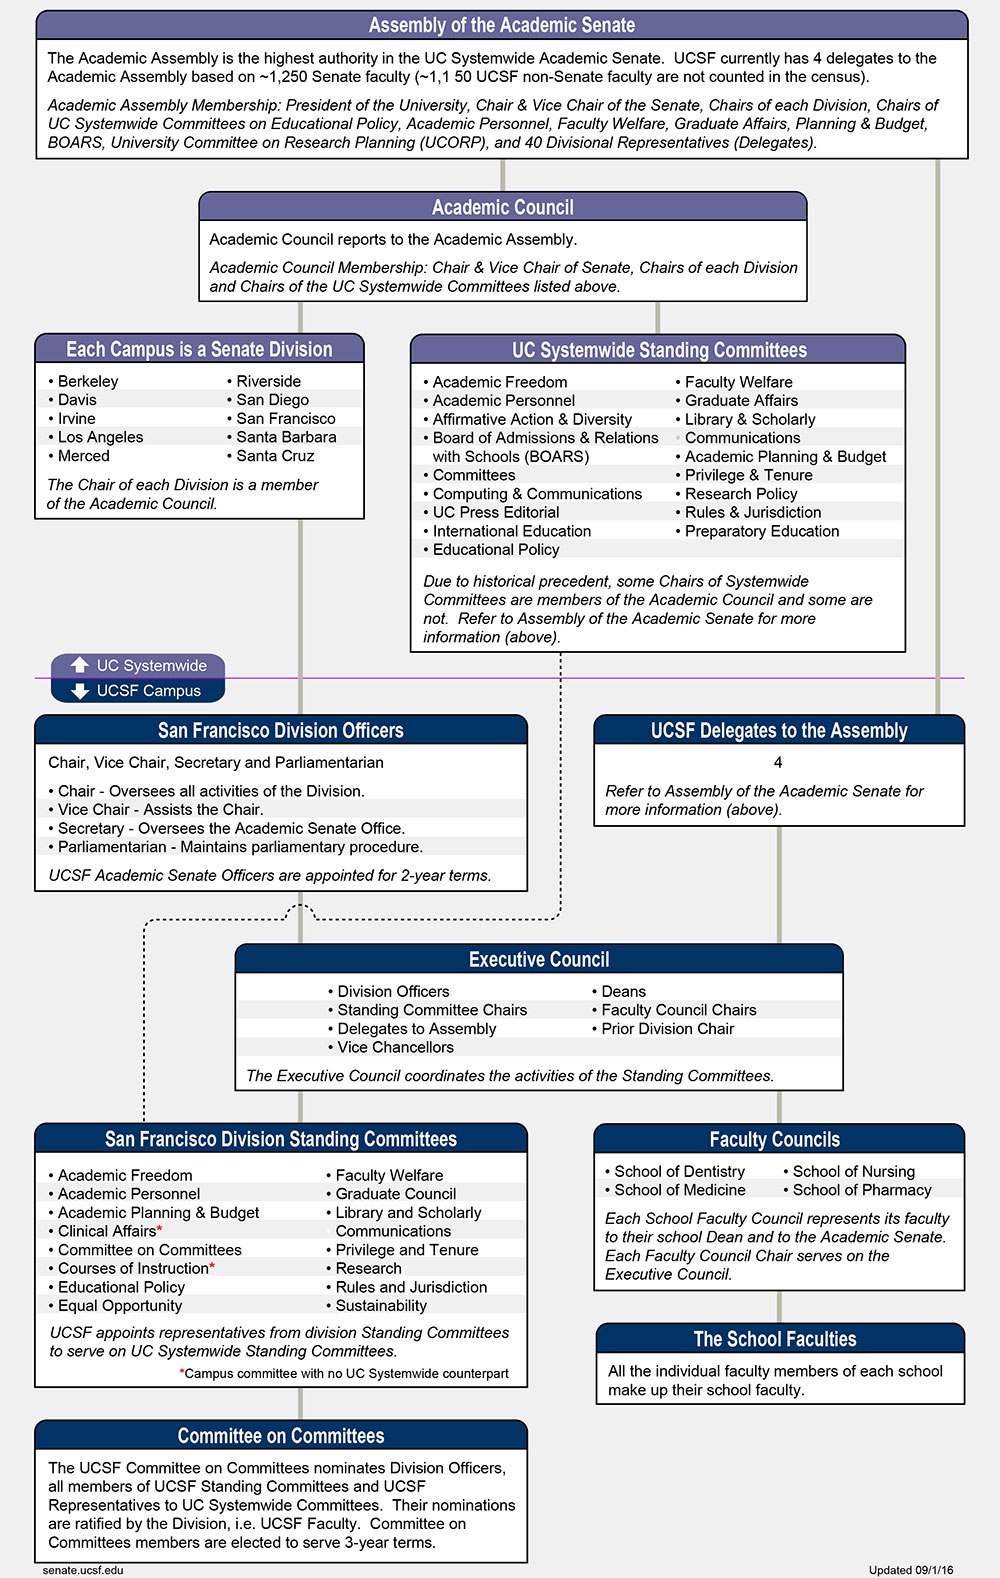 Organization Chart of UCSF Academic Senate